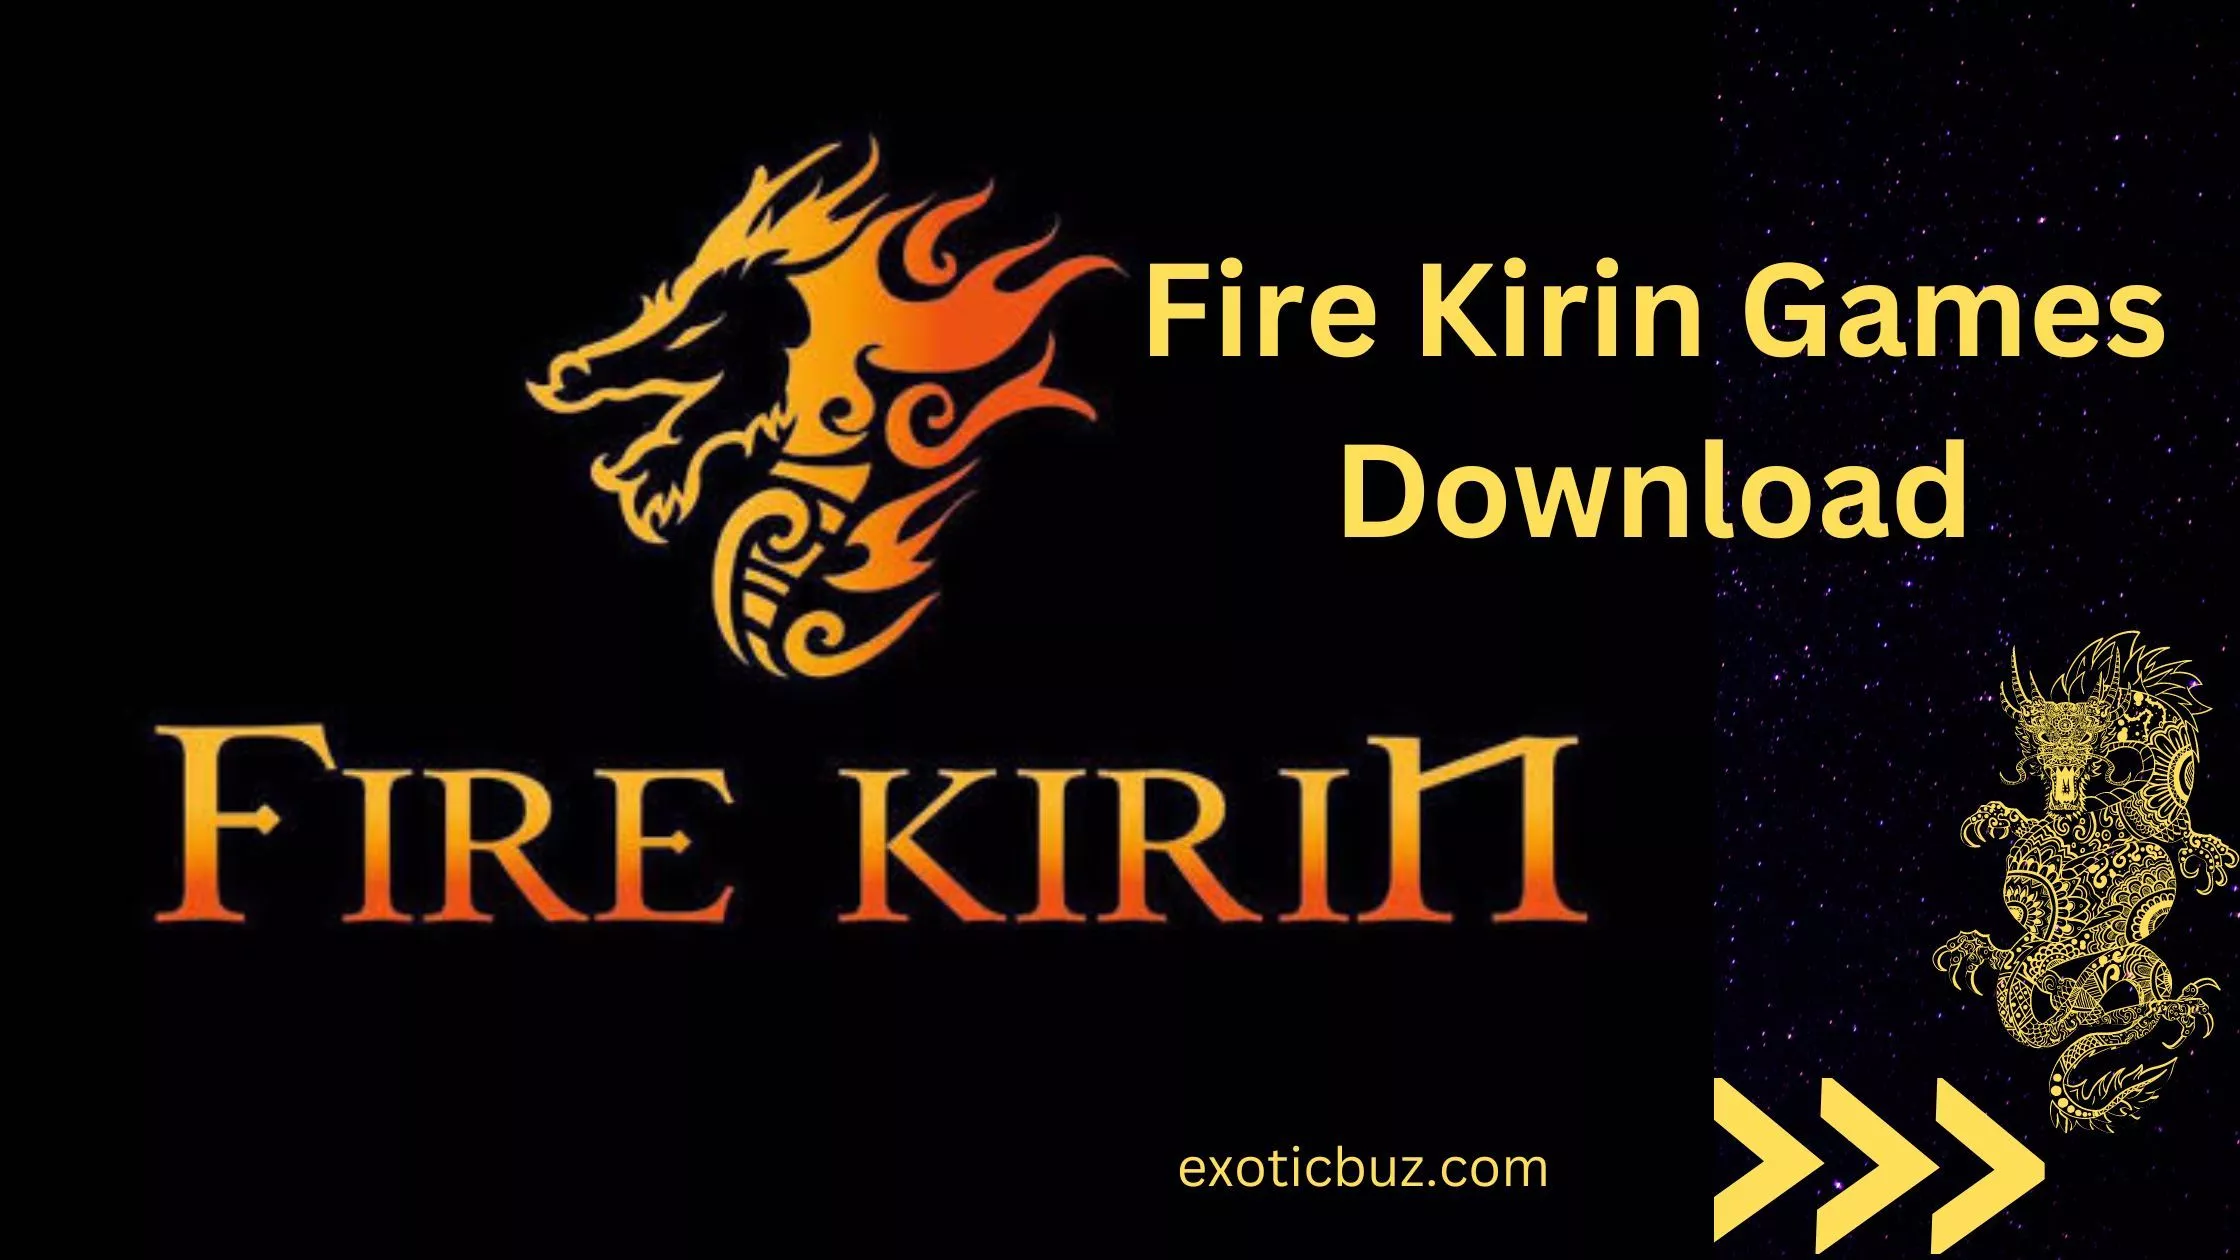 Fire Kirin Games Download